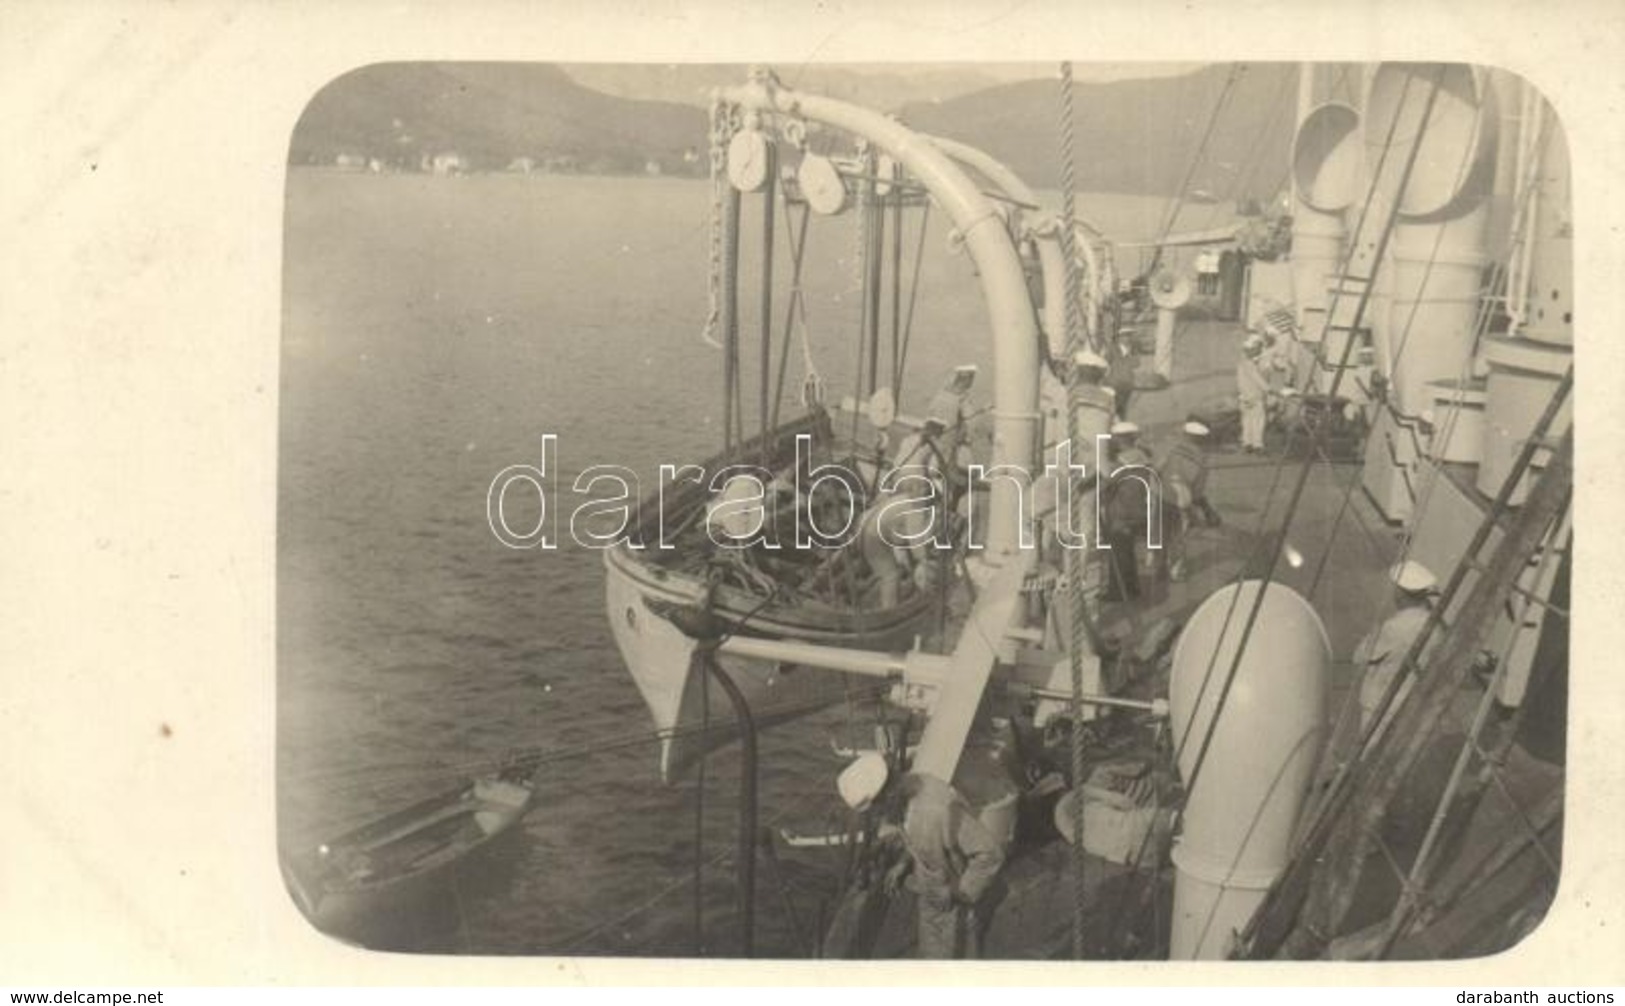 ** T1/T2 SMS Novara K.u.K. Haditengerészet Helgoland-osztályú Gyorscirkáló Fedélzete, Csónak Leengedése Partraszálláshoz - Ohne Zuordnung